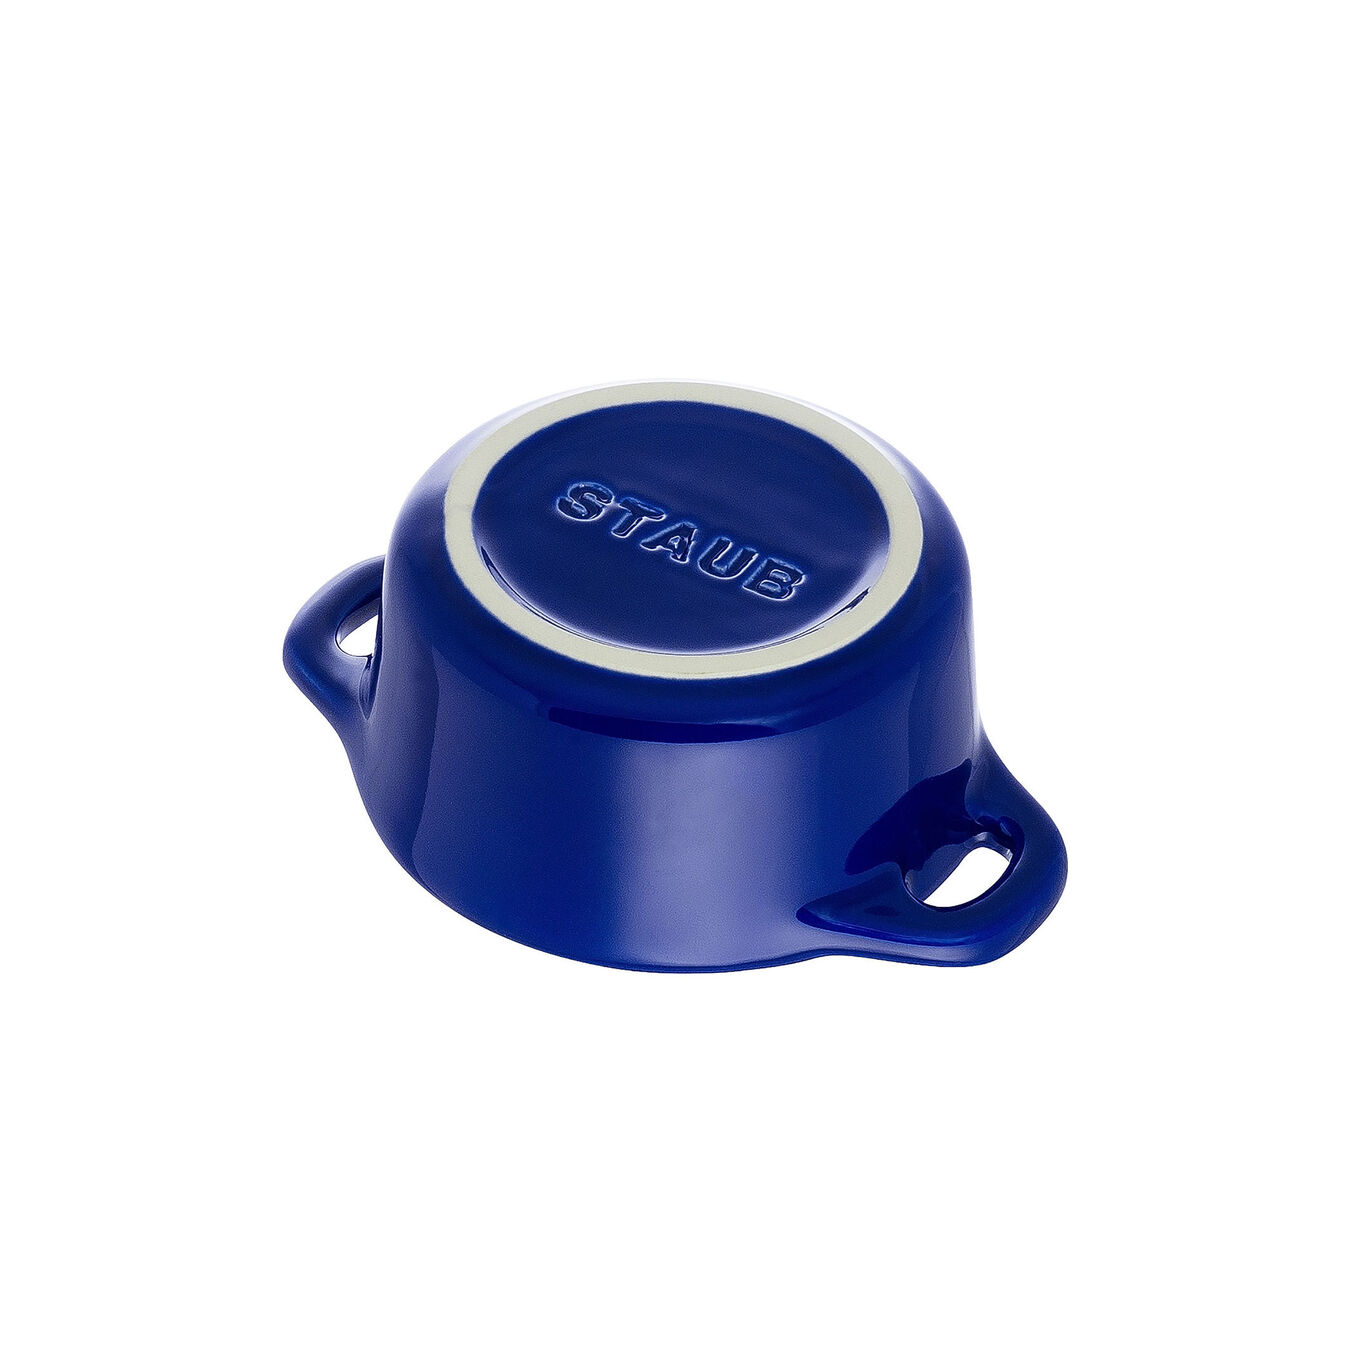 10 cm round Ceramic Mini Cocotte dark-blue,,large 5